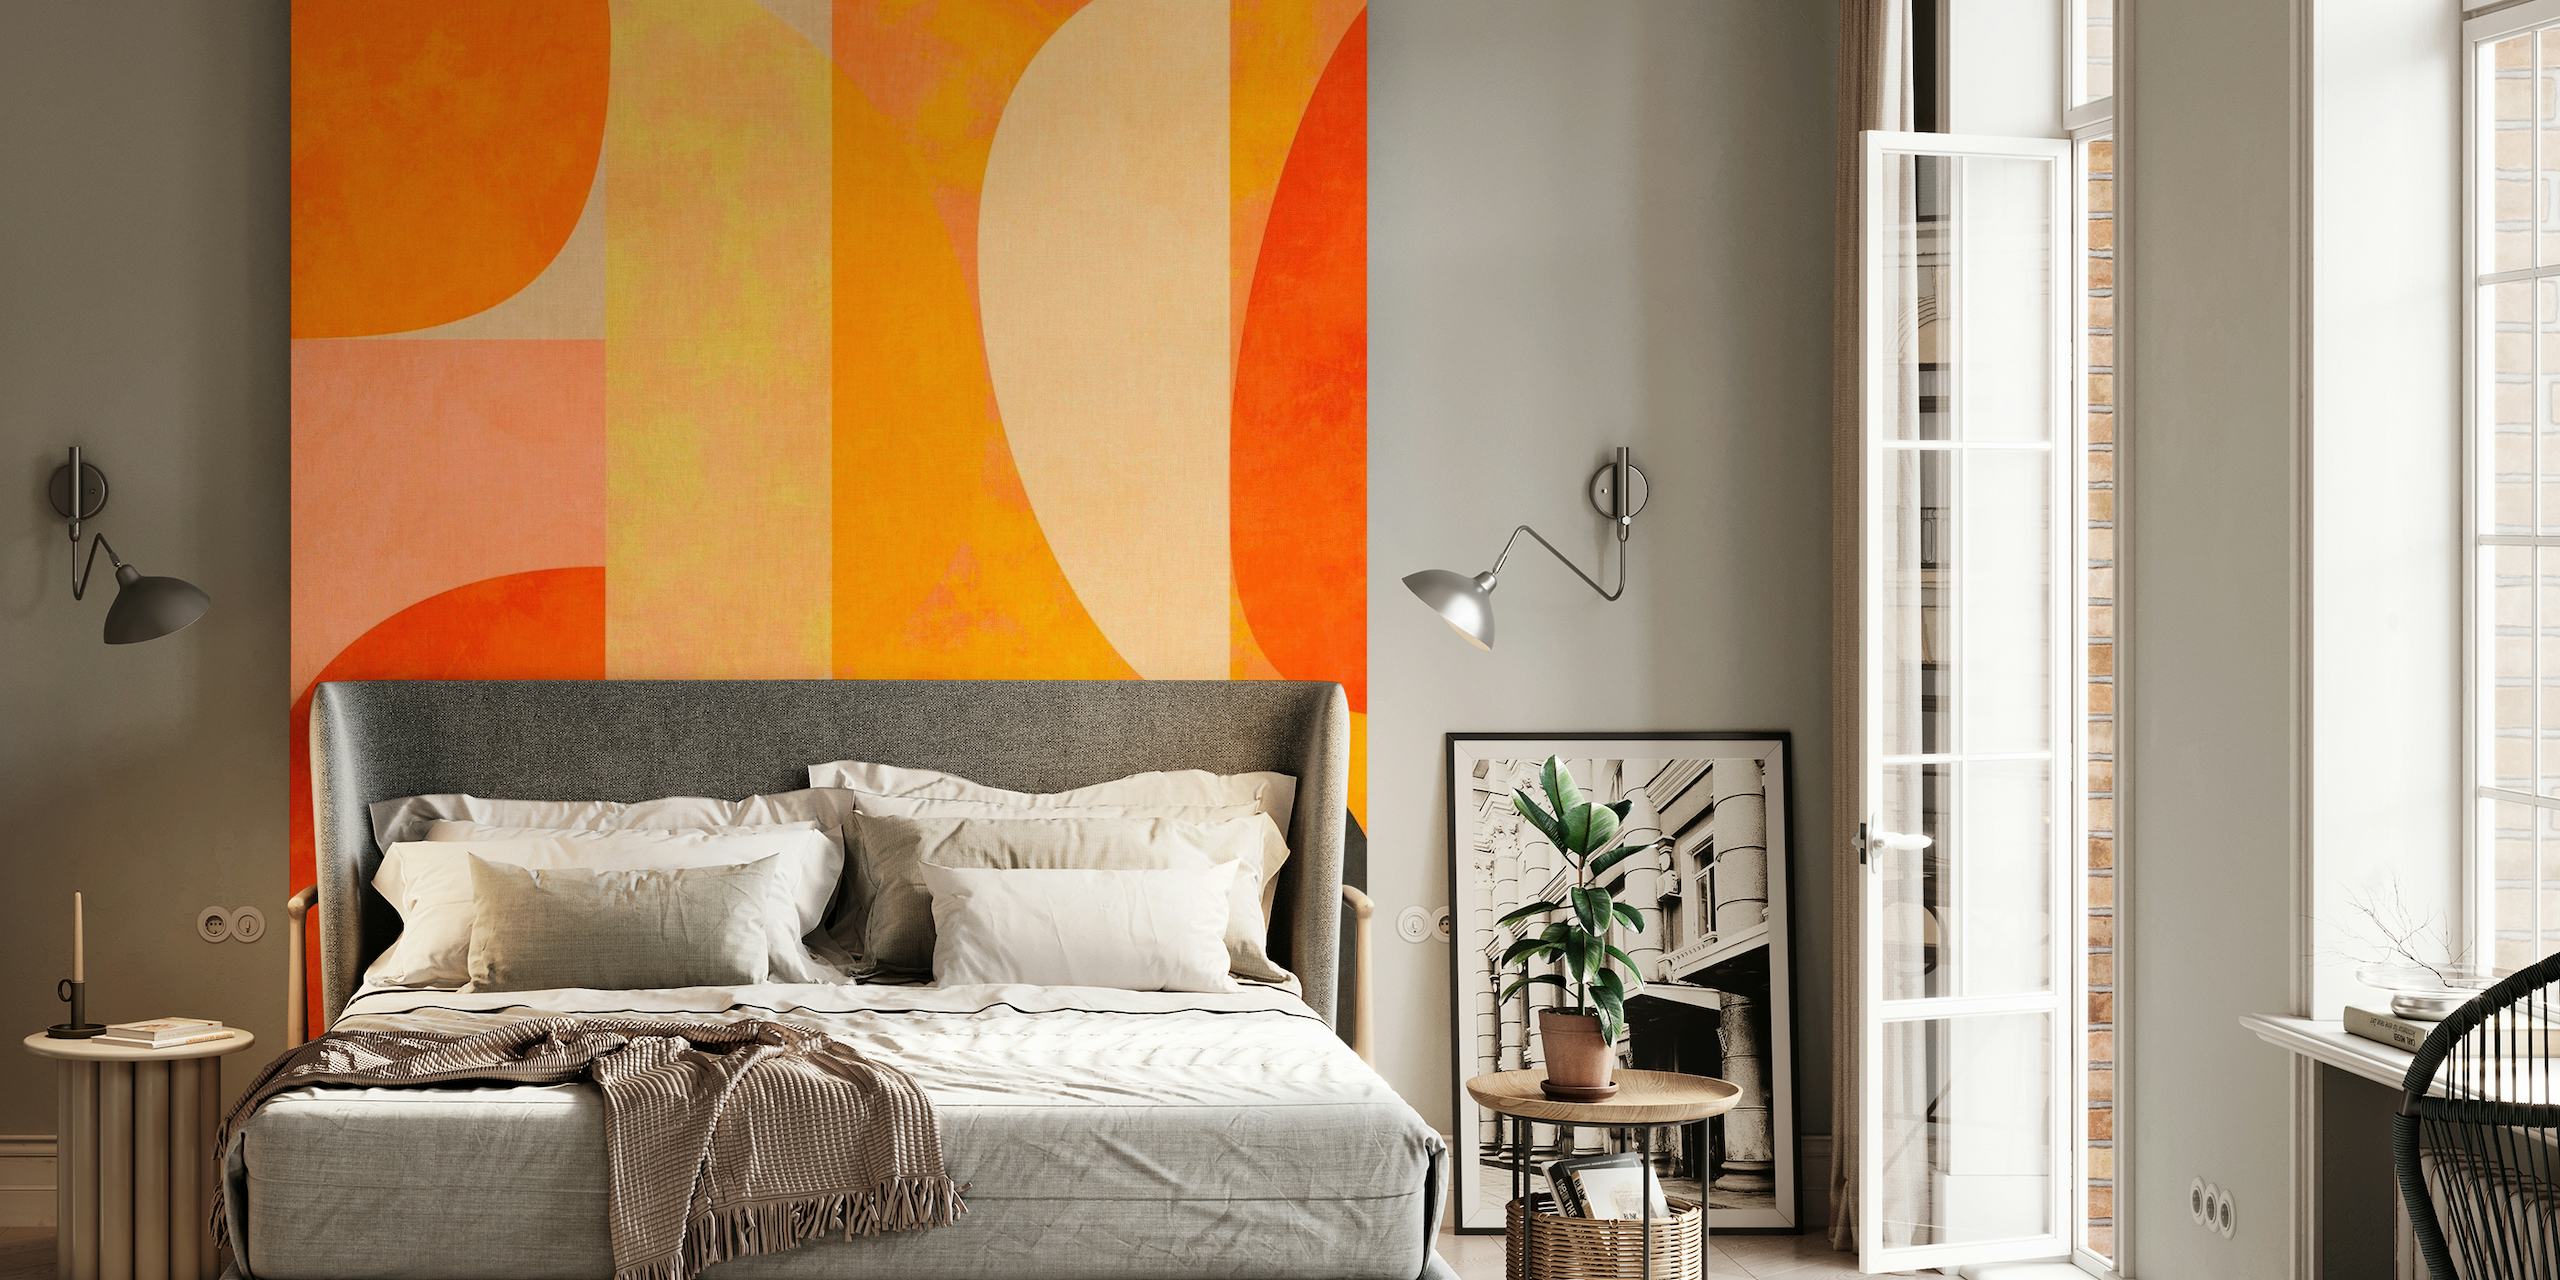 Muurschildering met abstracte geometrische vormen in gebrand oranje, dieprode en aardse tinten met zwarte accenten